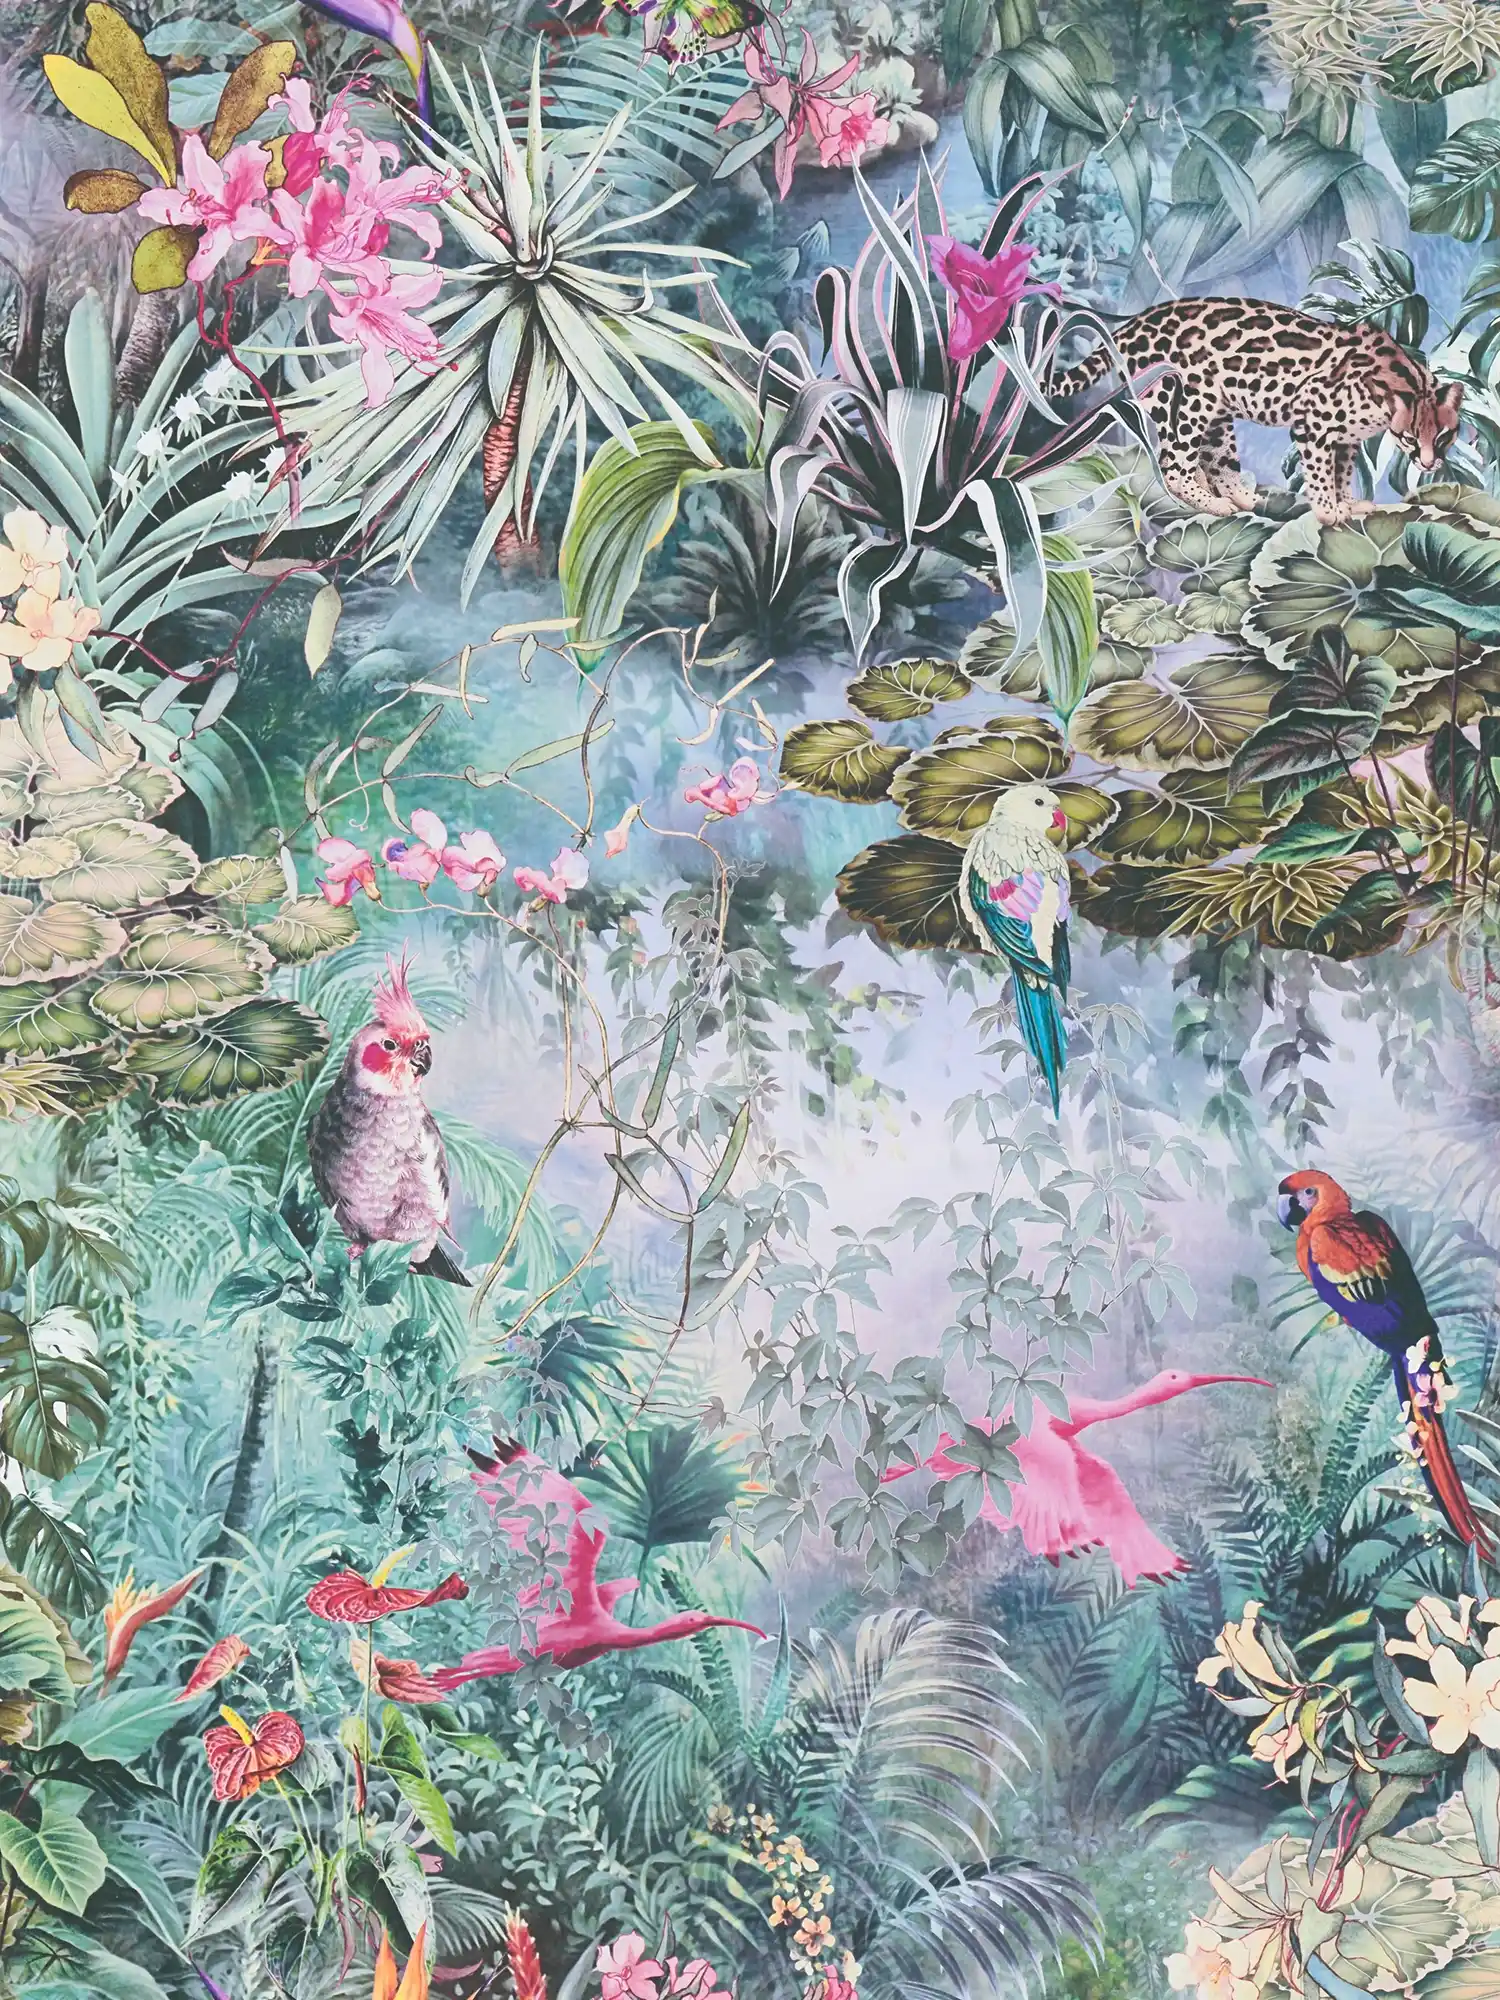 Jungle behang dieren & planten in aquarel look
